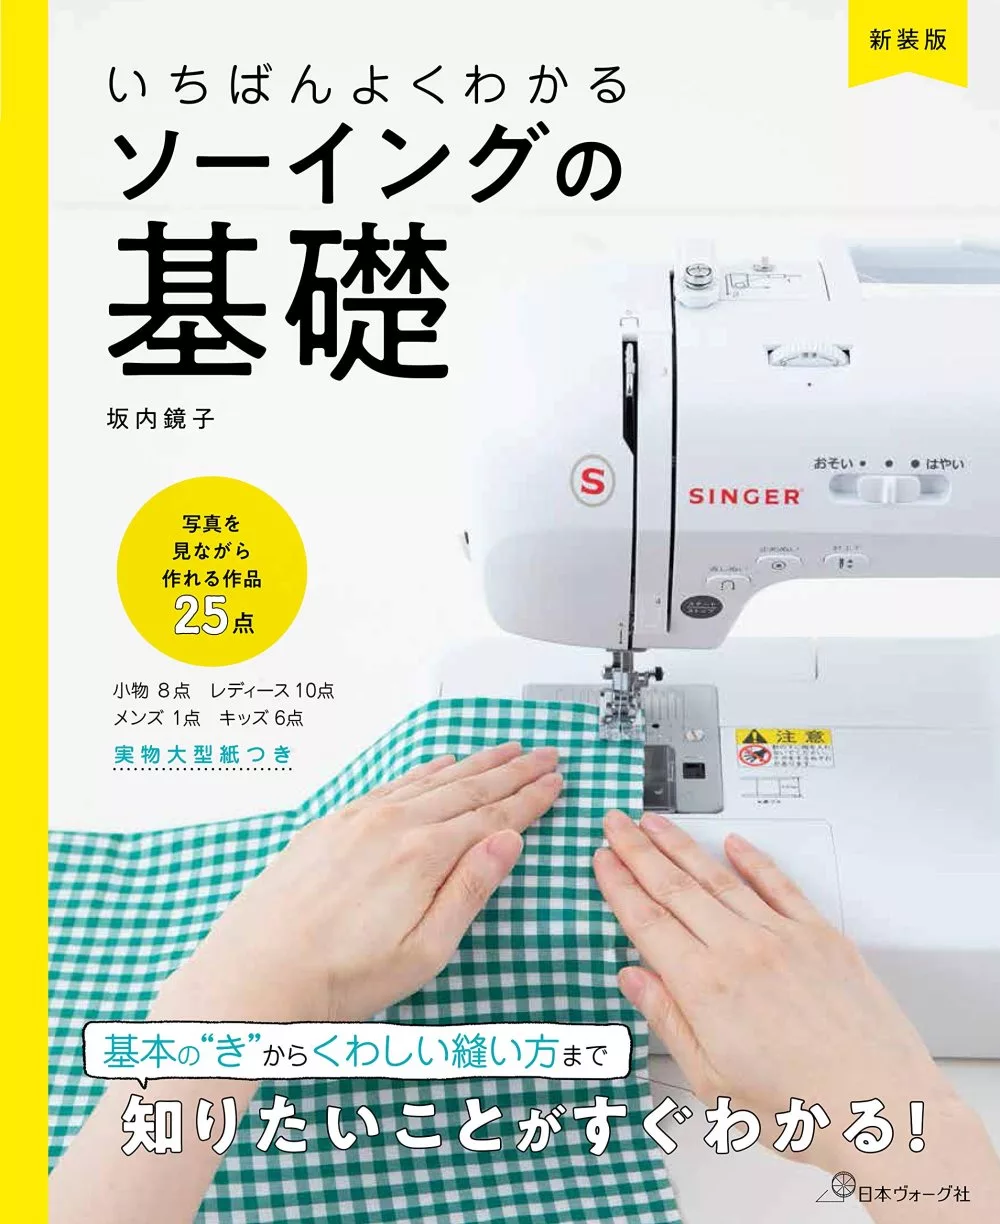 新版 簡單易懂的手工藝應用 裁縫機基礎技巧 Mook Stocknet台灣股網